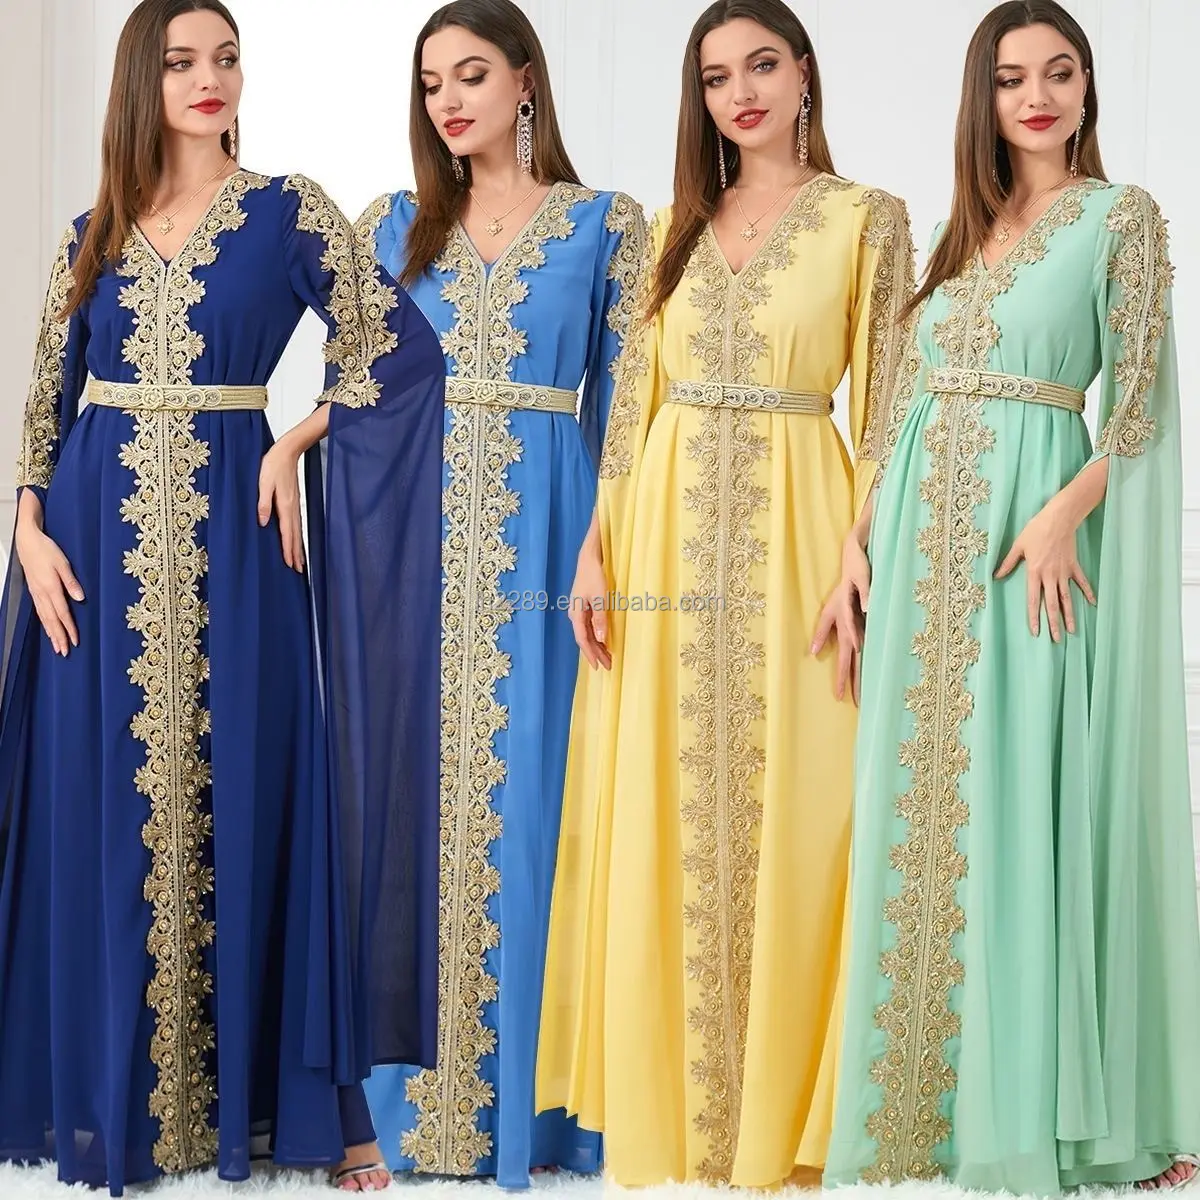 Ramadan Hồi Giáo Quần Áo Sang Trọng Hồi Giáo Bộ Sưu Tập Váy Của Phụ Nữ Ấn Độ Dubai Thổ Nhĩ Kỳ Abaya Phong Cách Dân tộc Ma-rốc Abaya Ăn Mặc